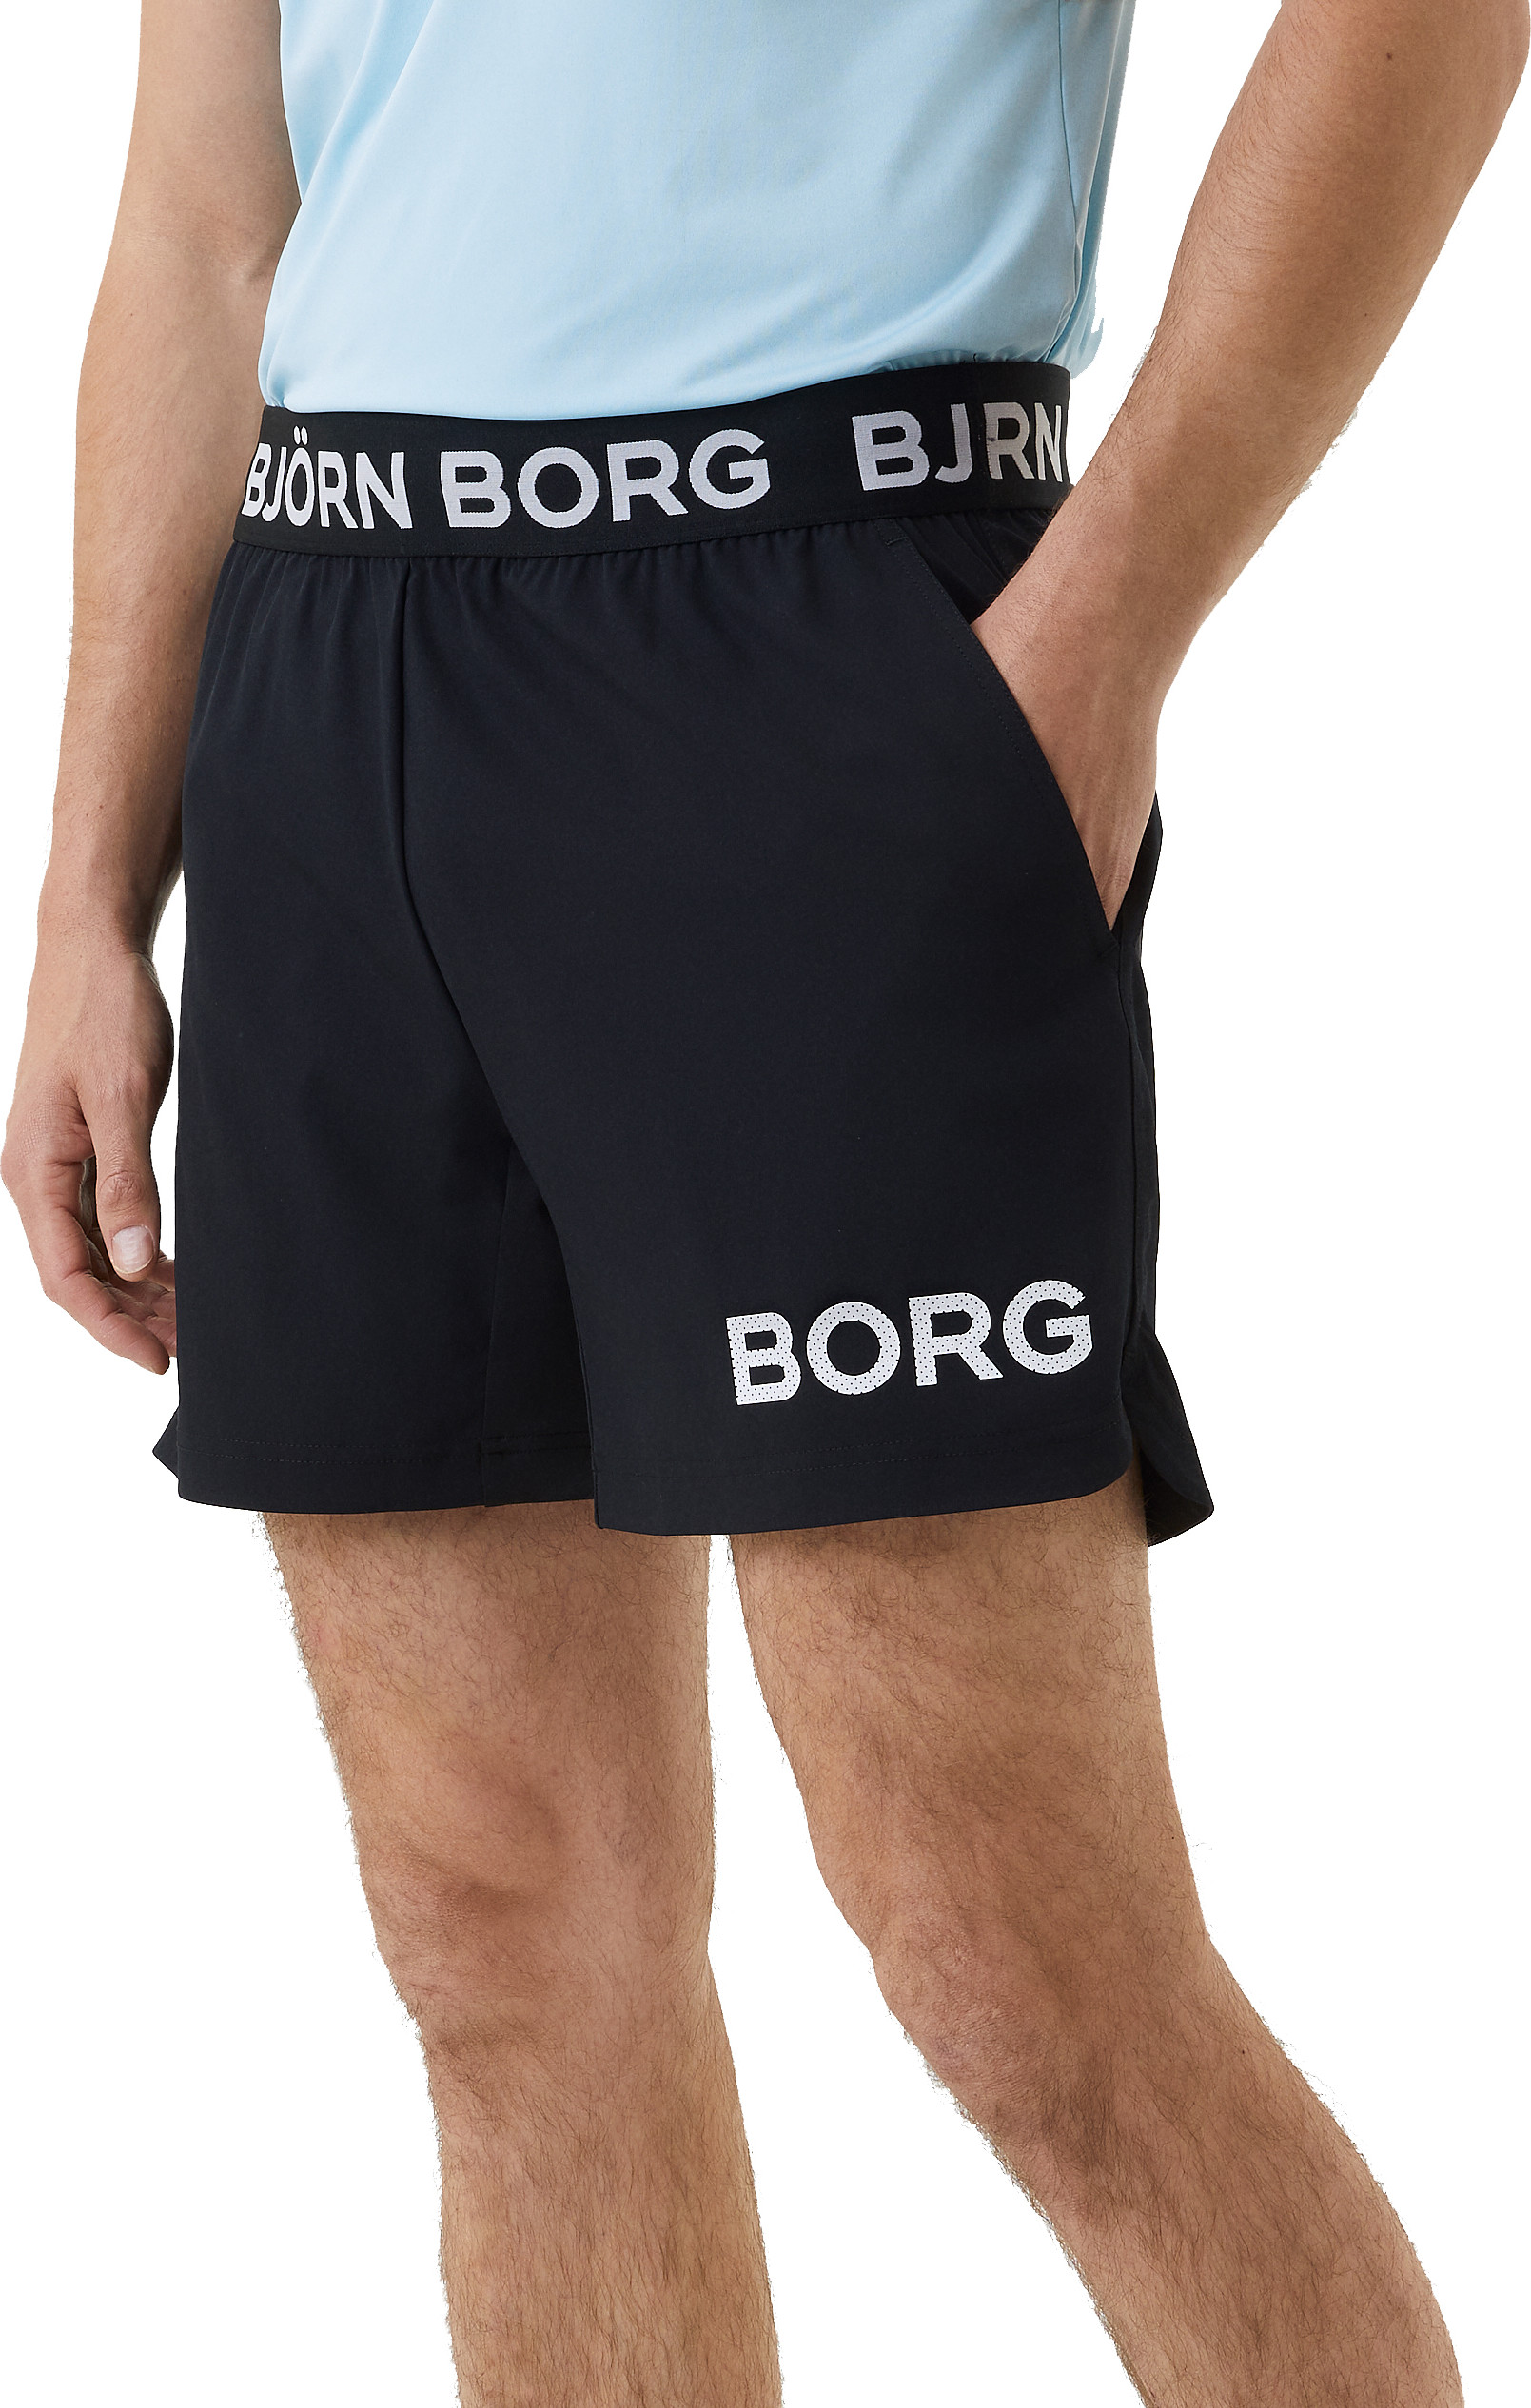 Björn Borg Men’s Borg Short Shorts Black Beauty/White